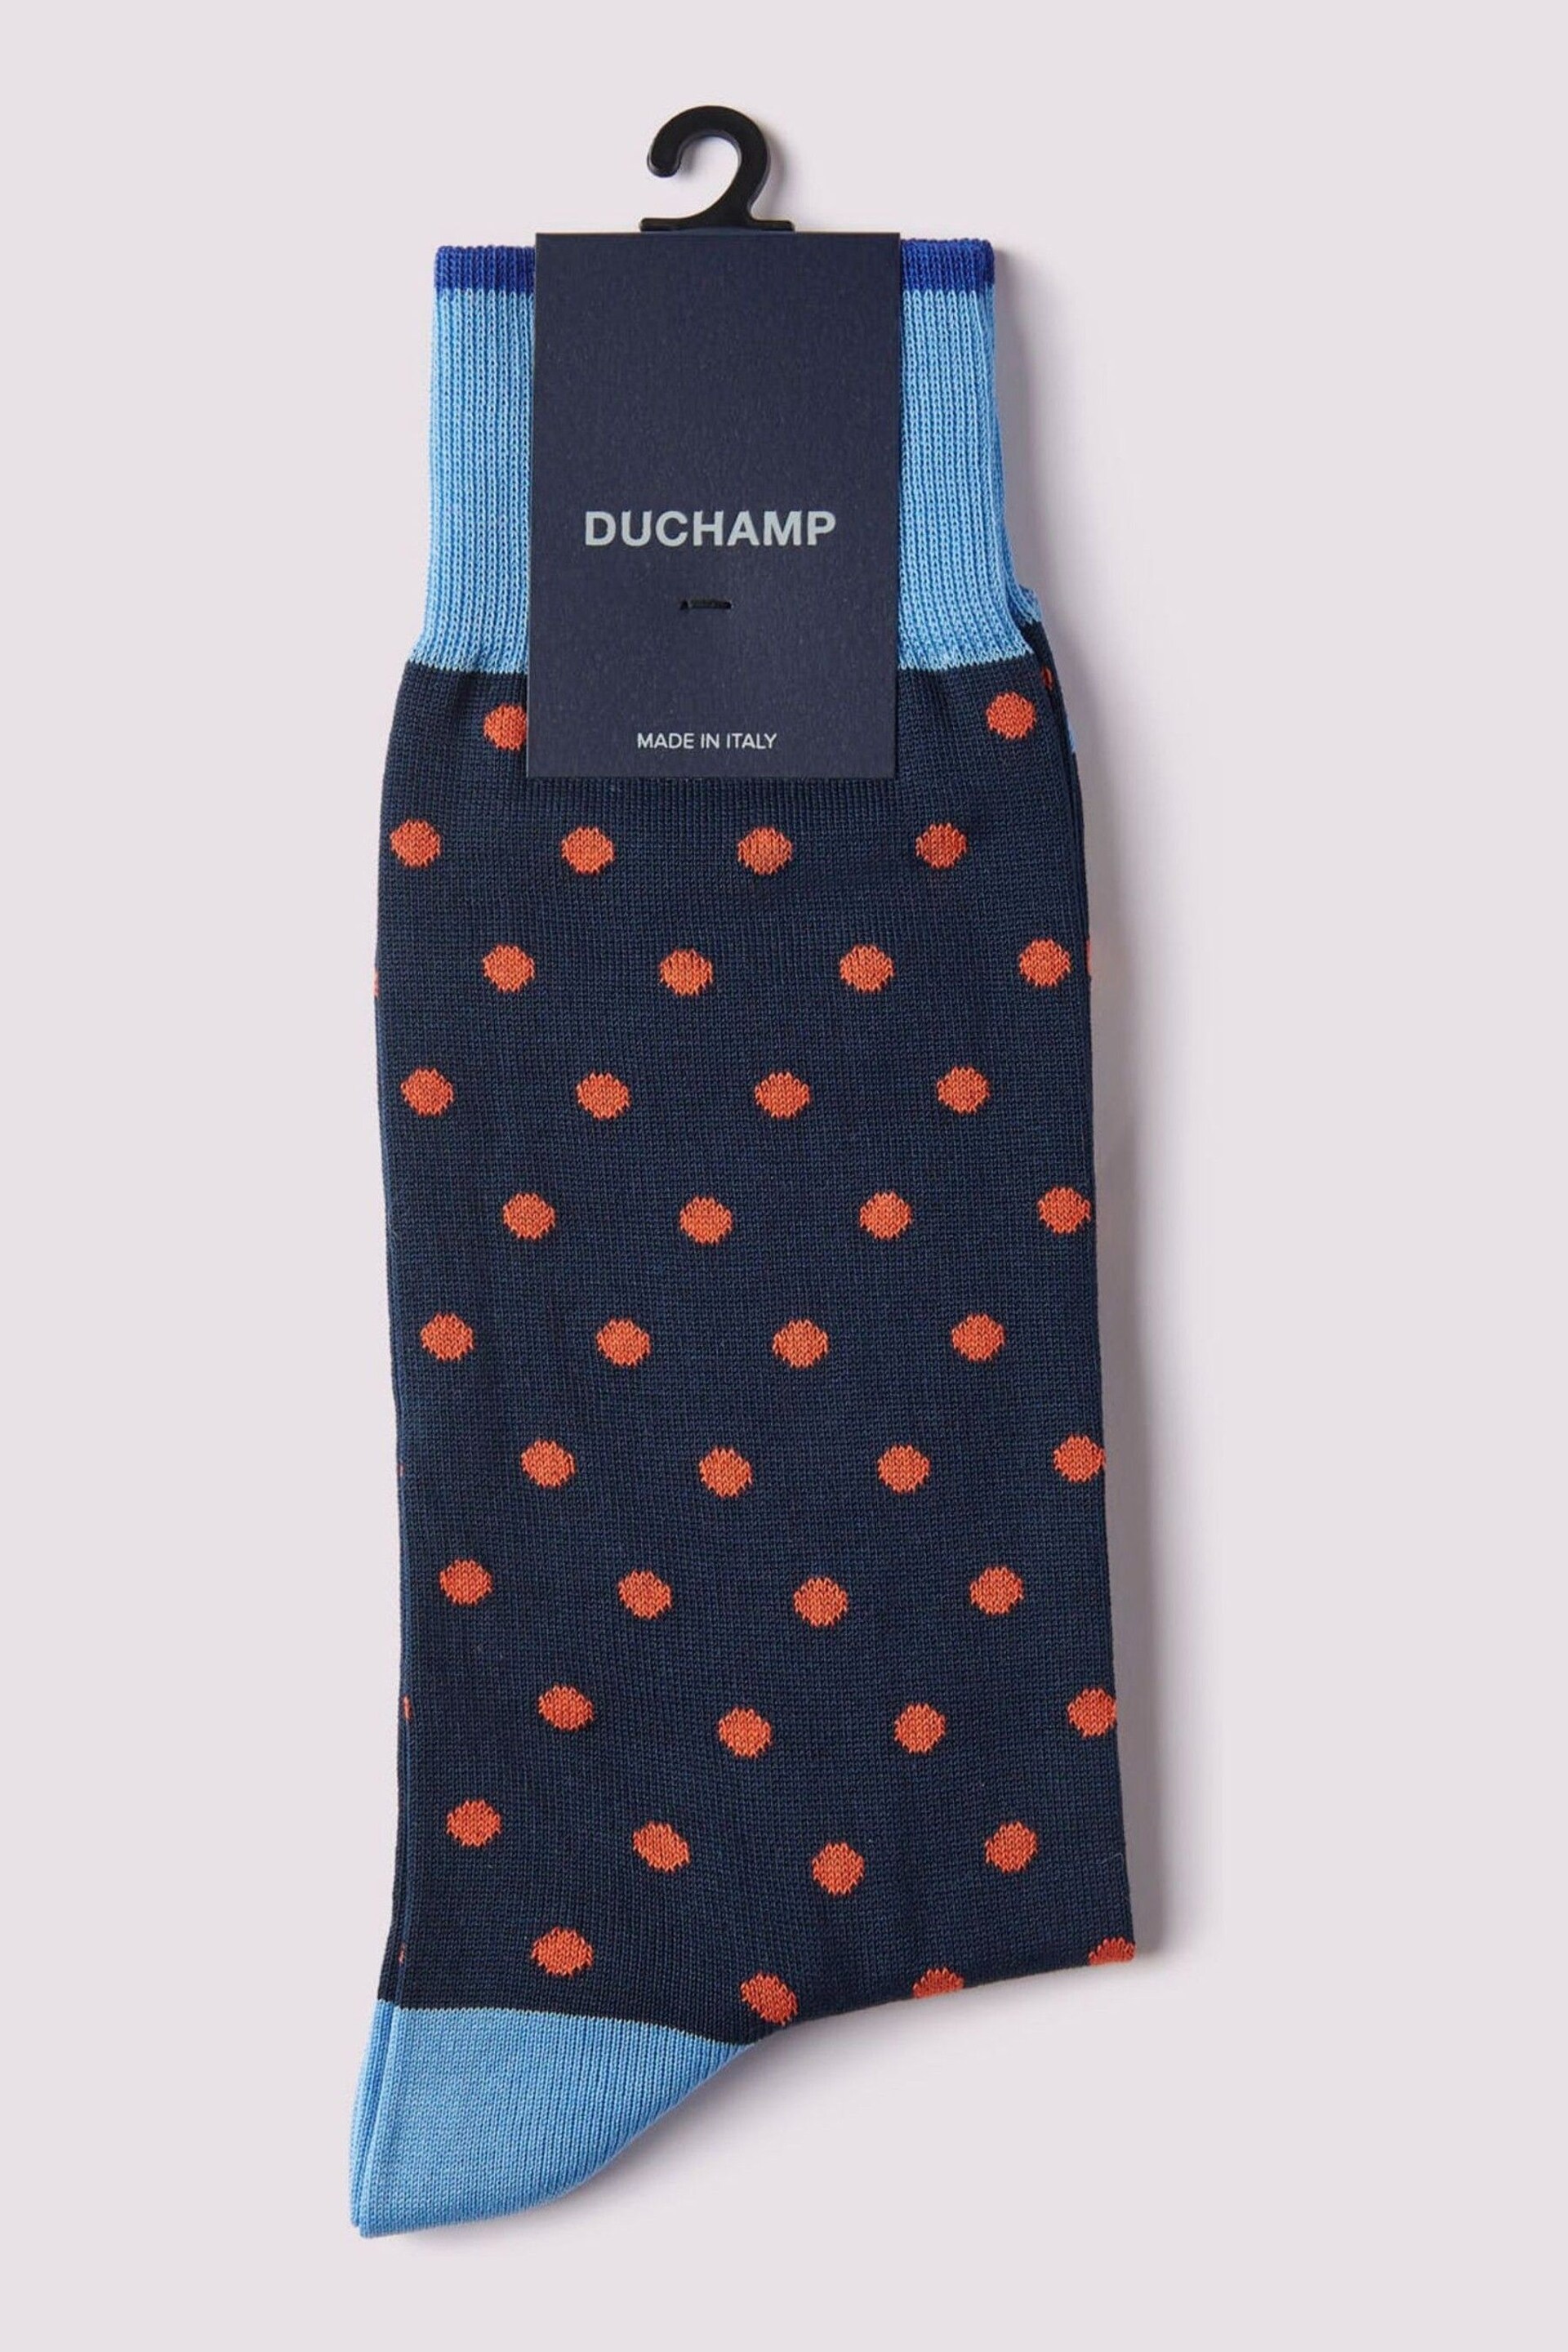 Duchamp Spot Black Socks - Image 1 of 3